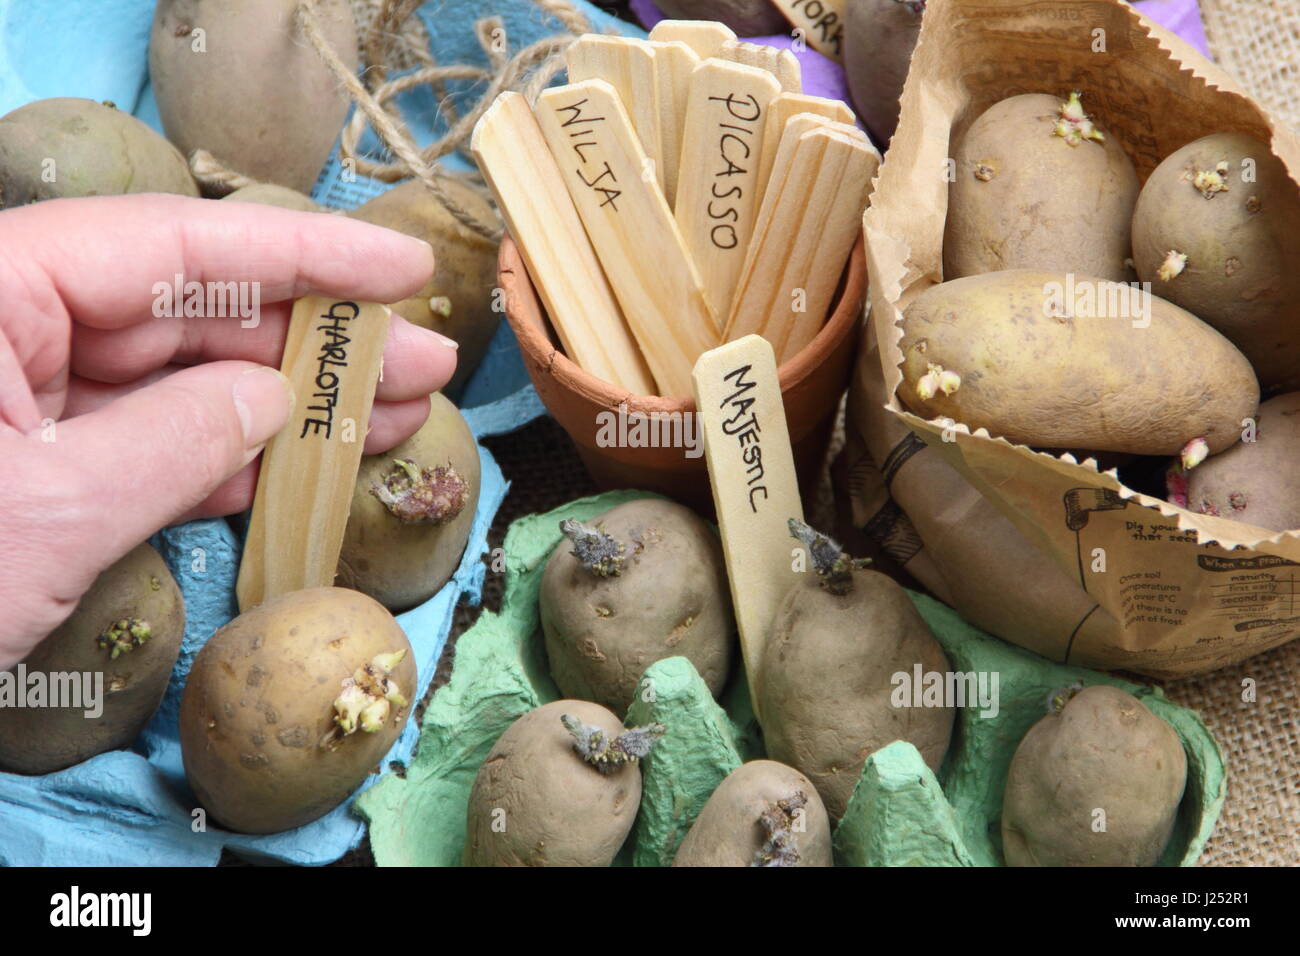 Maschio di etichettatura giardiniere tuberi seme di patate chitting in scatola per uova in interni per incoraggiare i germogli di forte prima di piantare fuori in giardino patch vegetale Foto Stock